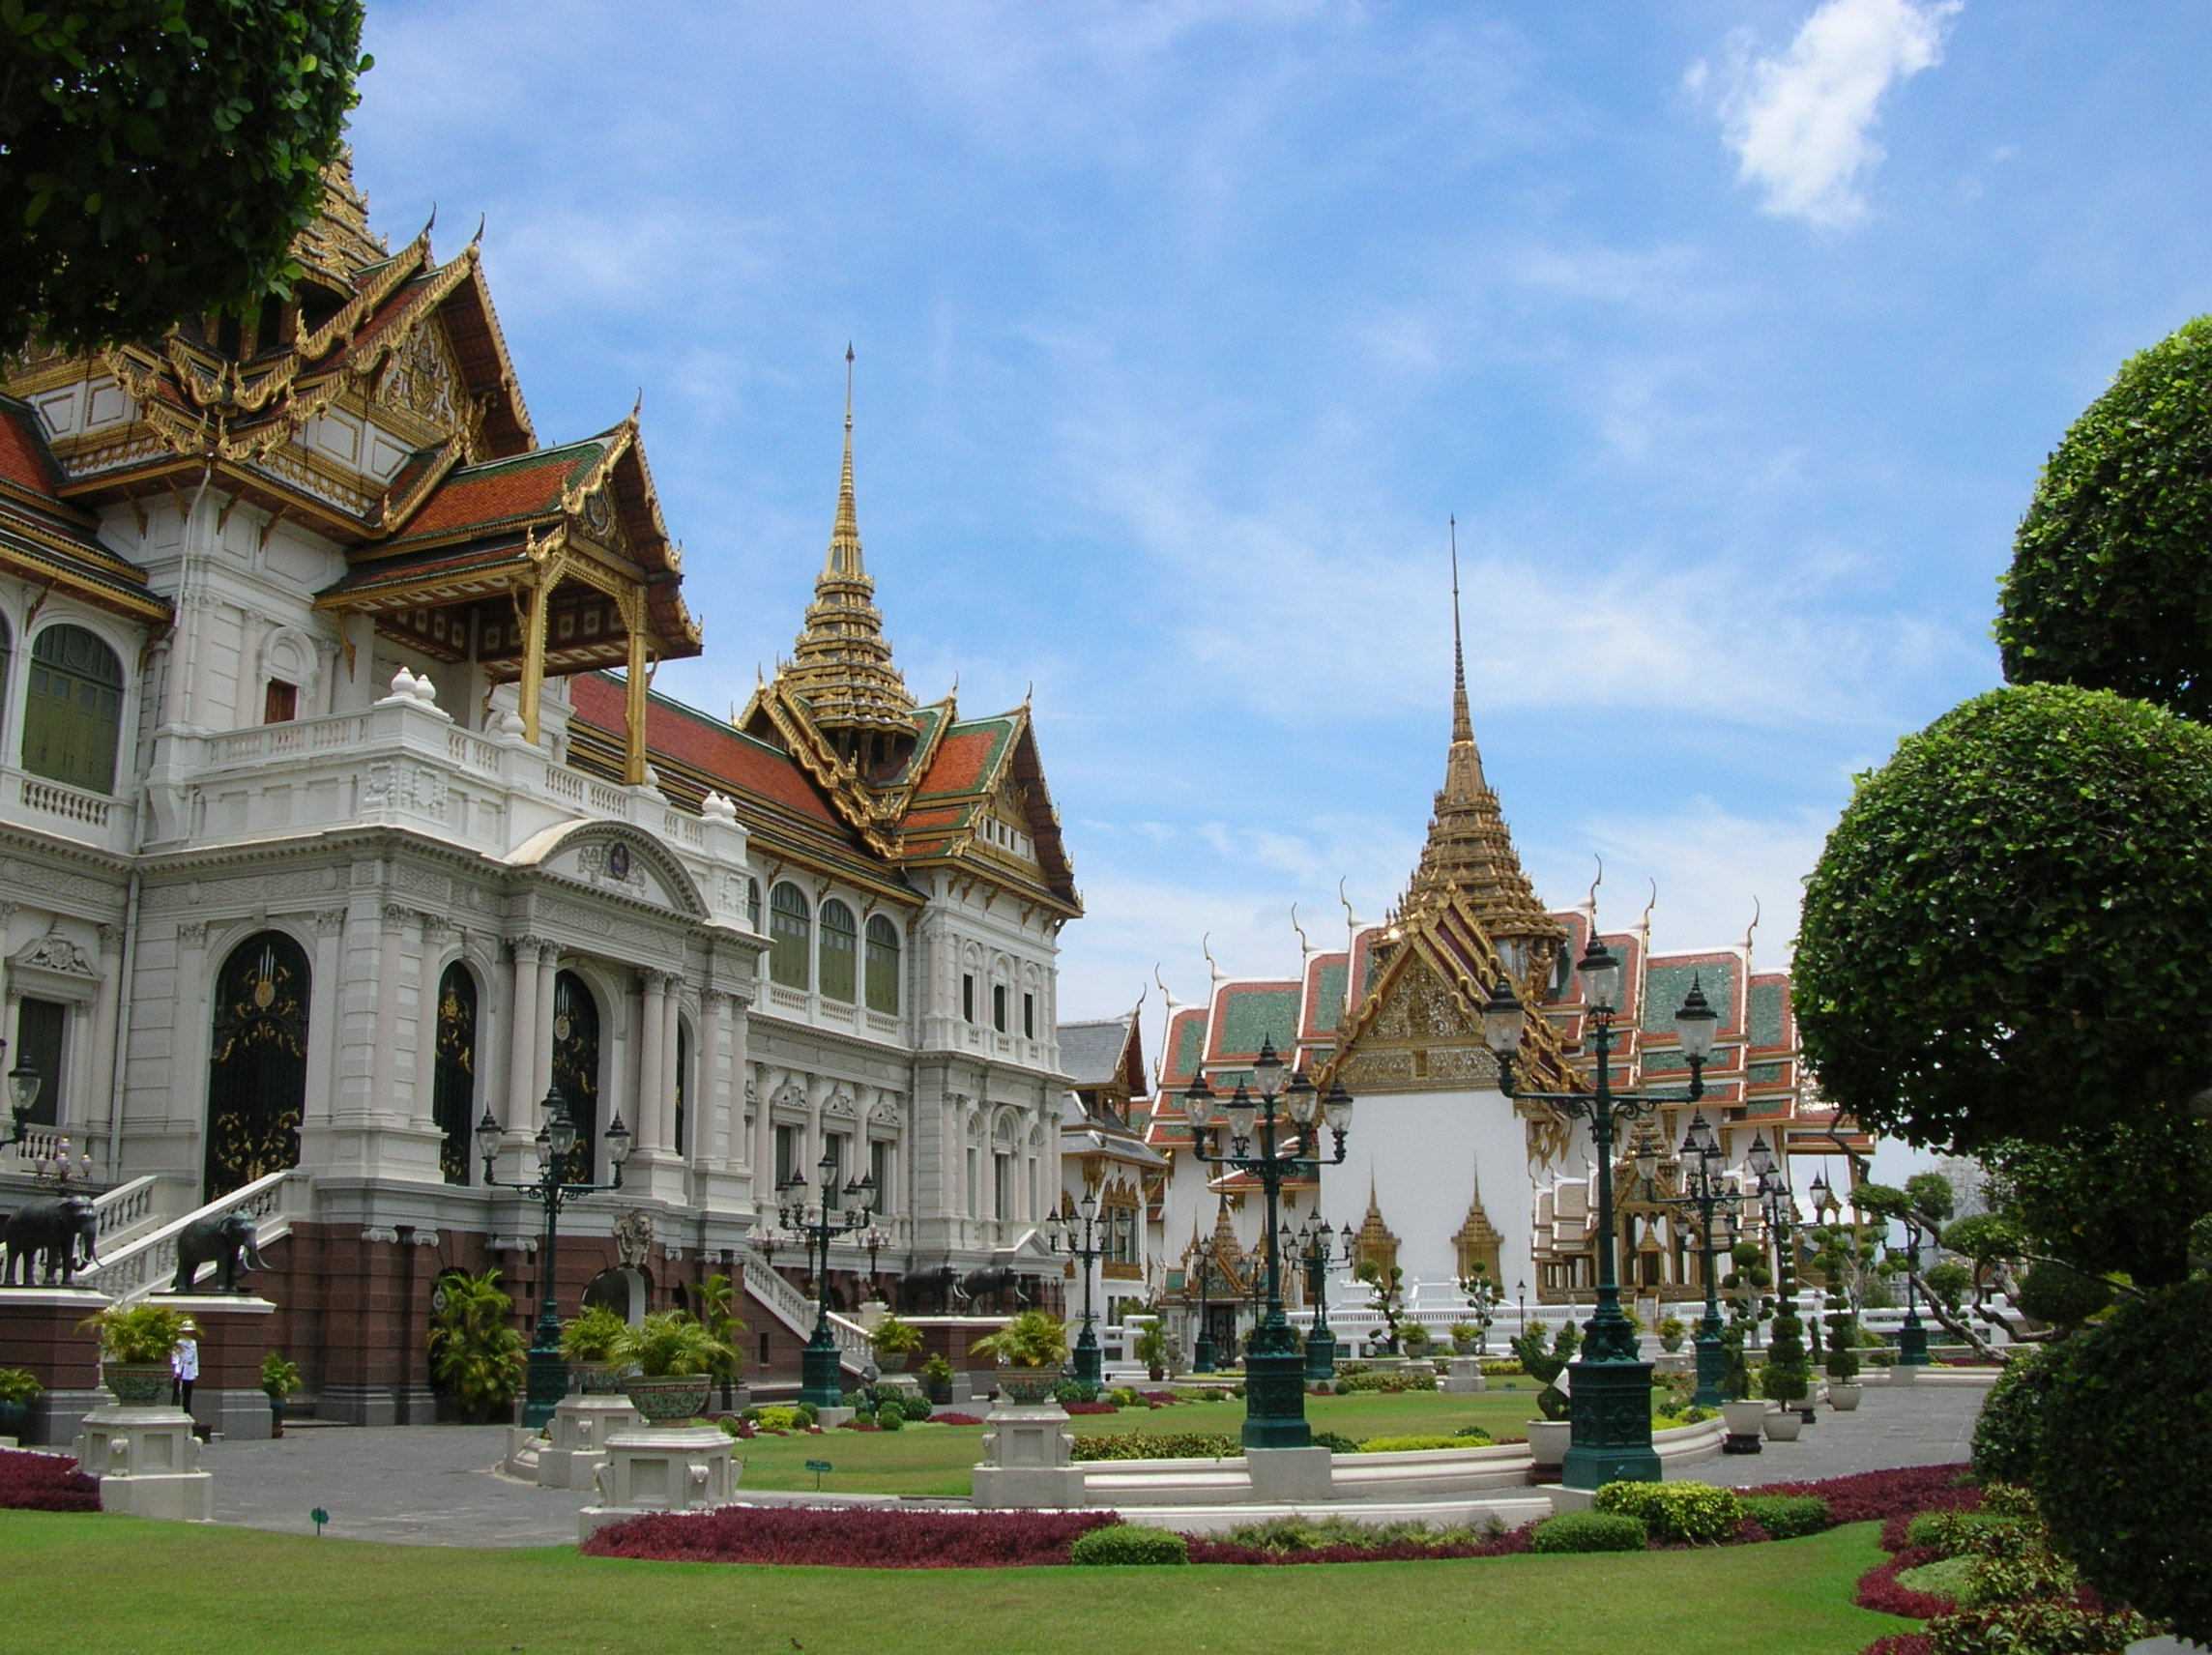 Красивый бангкок. Королевский дворец в Бангкоке. Большой Королевский дворец Бангкок Таиланд. Императорский дворец Тайланд. Гранд Палас Бангкок.